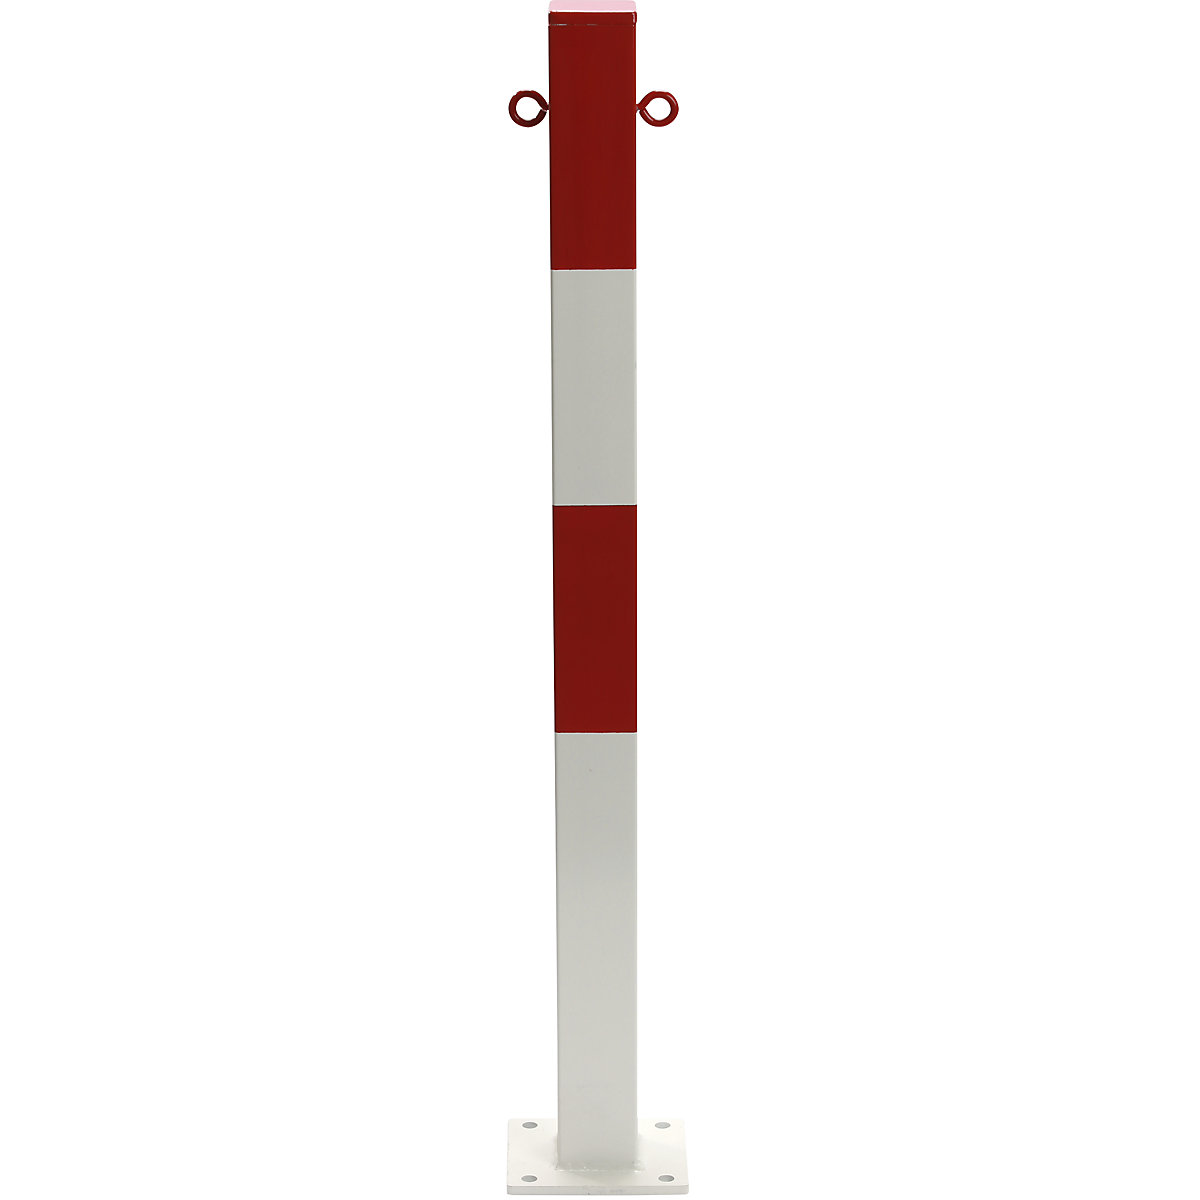 Zahradzovací stĺpik, na pripevnenie hmoždinkami, 70 x 70 mm, červeno-biela plastová povrchová úprava, 2 oká-5